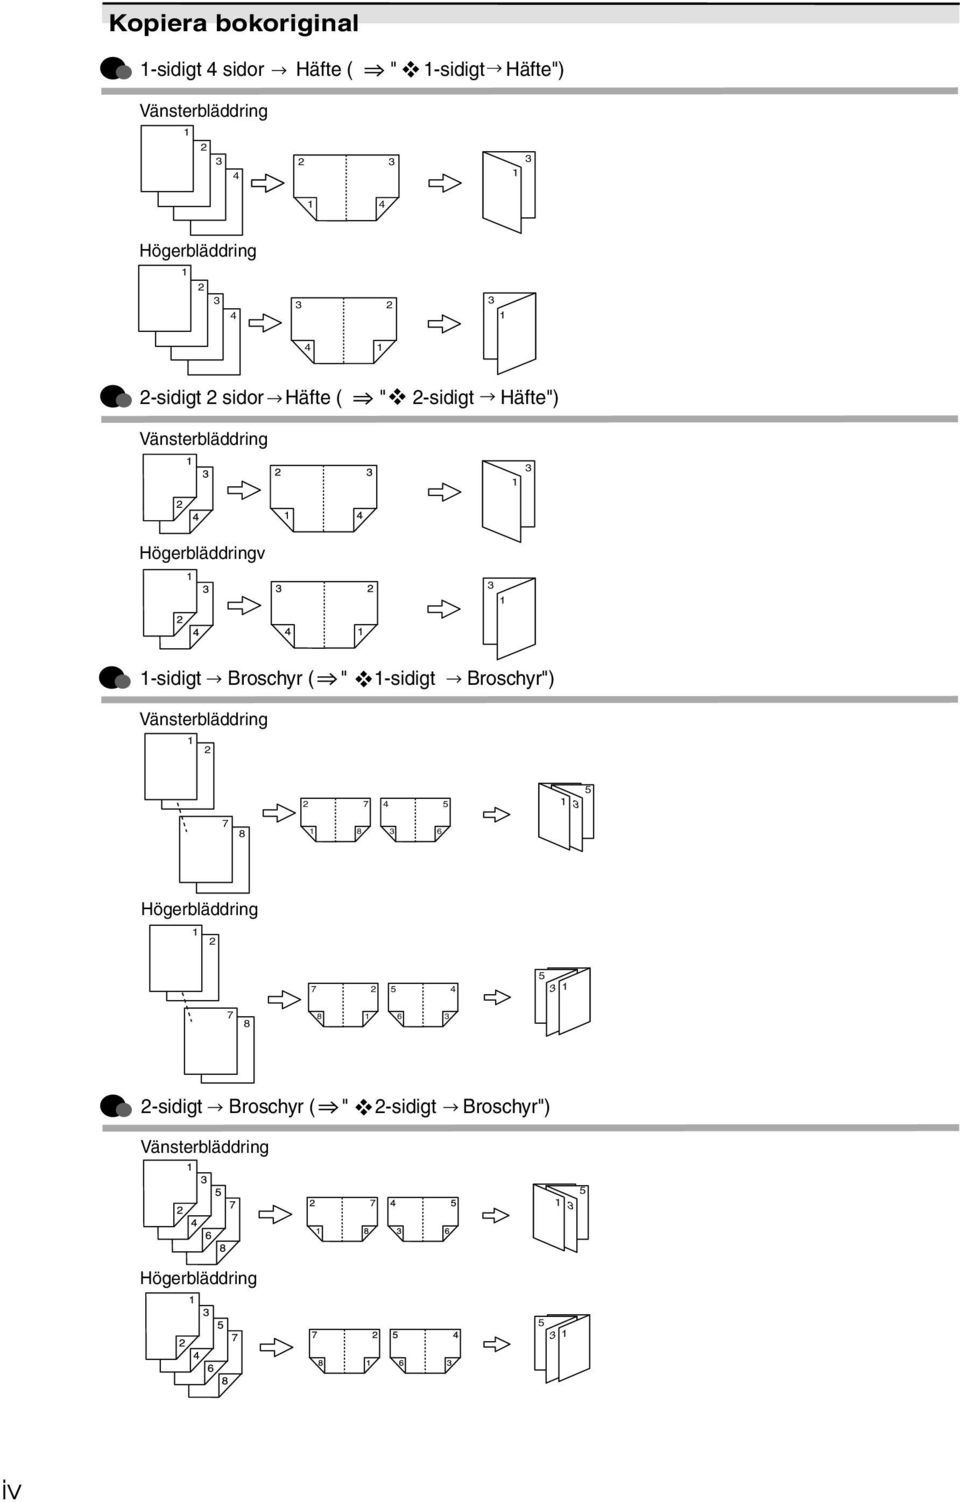 Högerbläddringv 3 1 1-sidigt Broschyr ( " 1-sidigt Broschyr") Vänsterbläddring 1 7 4 5 1 3 5 7 8 1 8 3 6